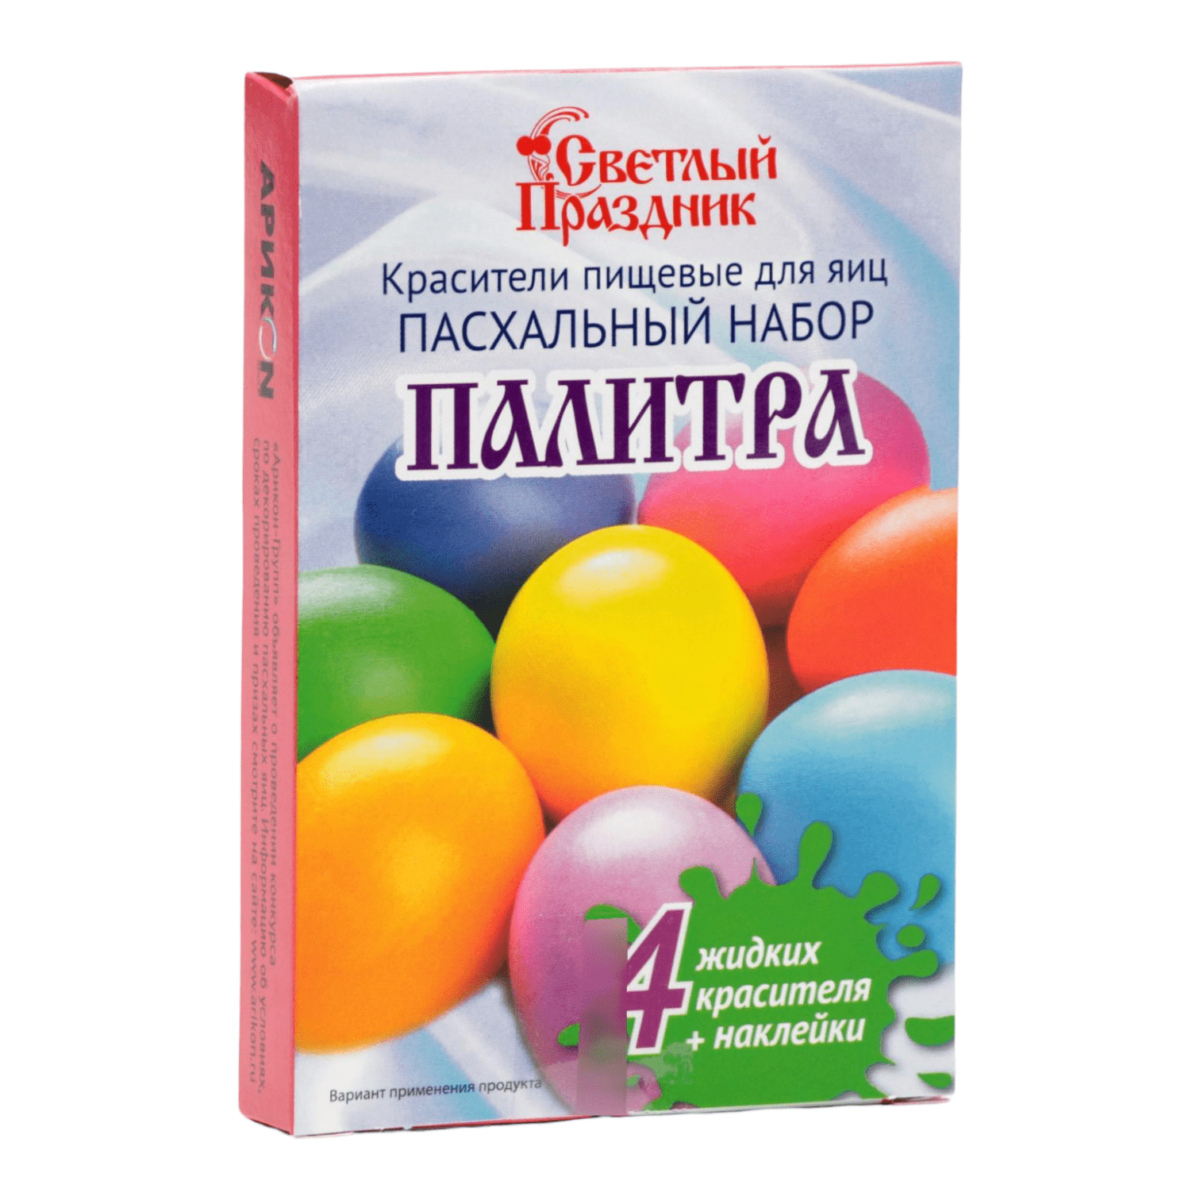 Красители пищевые для яиц «Пасхальный набор Палитра» – Gastronomy